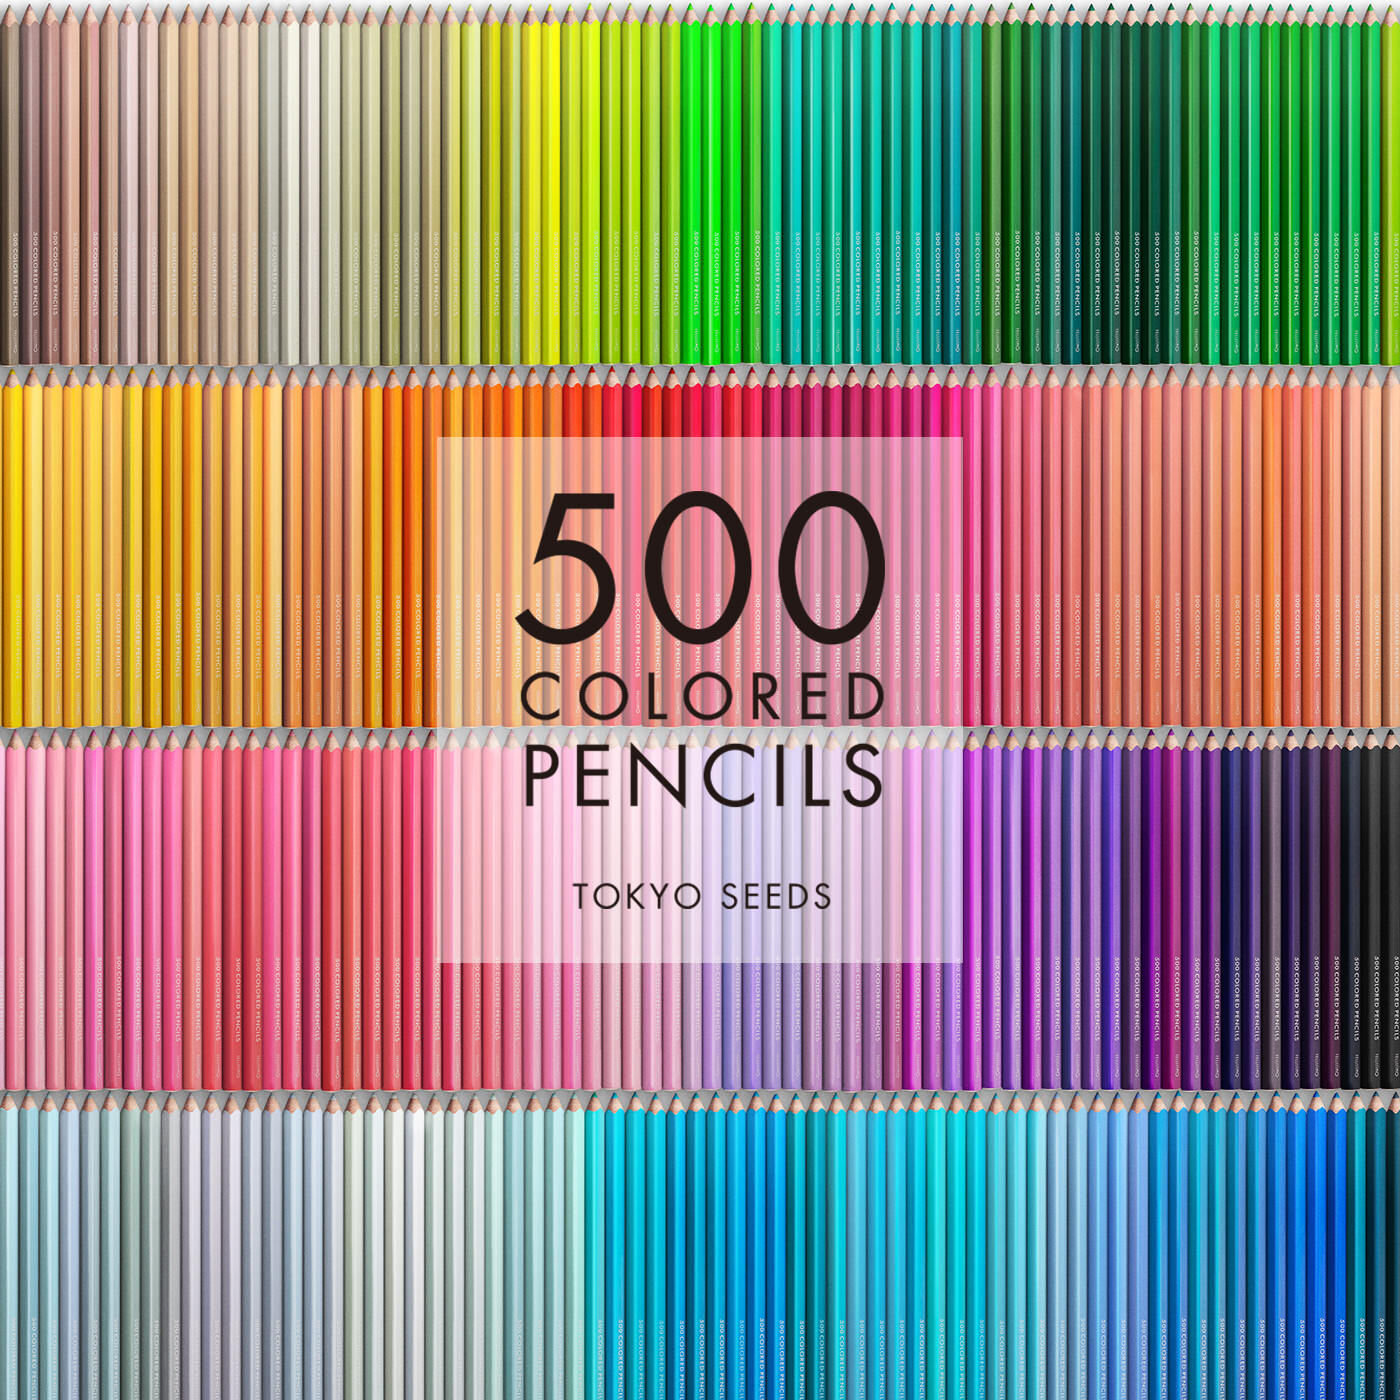 Real Stock|【435/500 OCEAN DRIFT】500色の色えんぴつ TOKYO SEEDS|1992年、世界初の「500色」という膨大な色数の色えんぴつが誕生して以来、その販売数は発売当初から合わせると、世界55ヵ国10万セット以上。今回、メイド・イン・ジャパンにこだわり、すべてが新しく生まれ変わって登場しました。